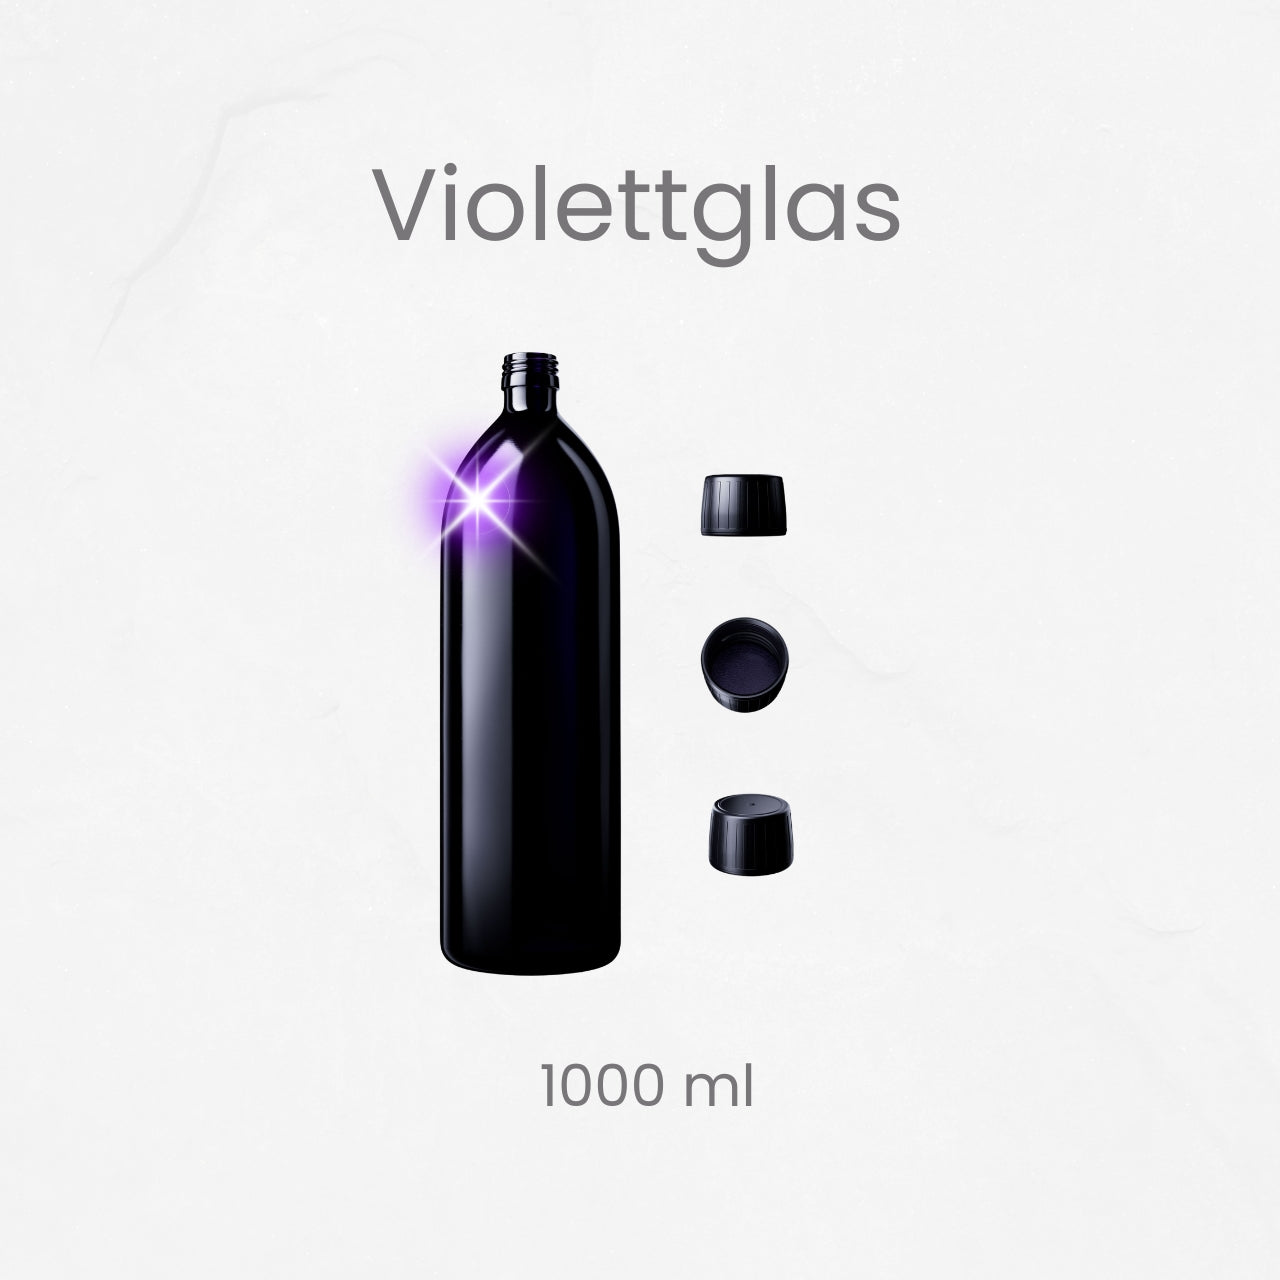 Energiegeladene Getränke: 1L Aquarius Trinkflasche aus patentiertem Violettglas inkl. Verschluss